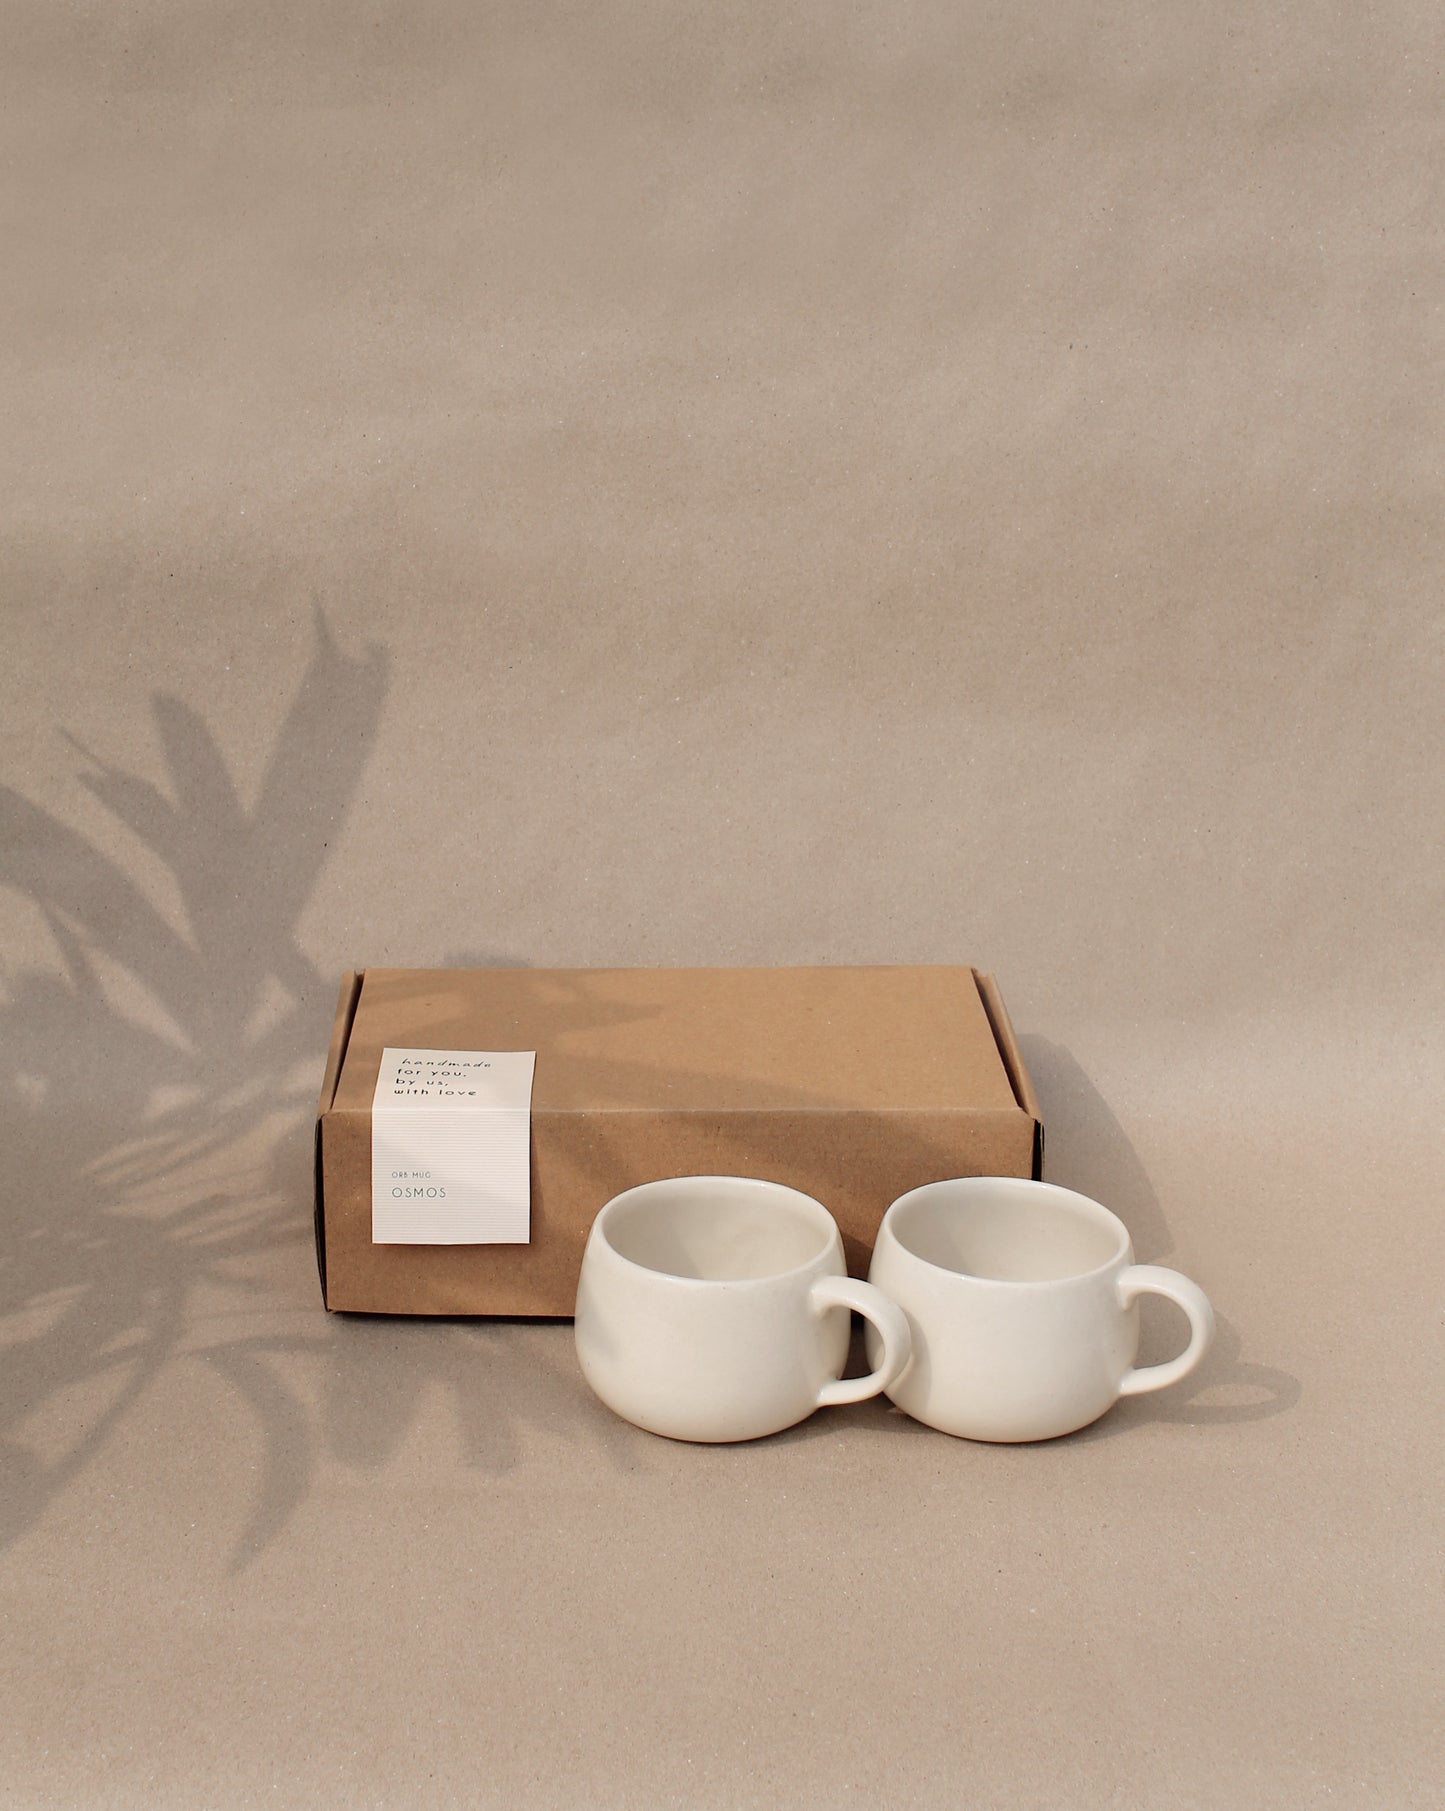 Orb Mug (Gift Pack of 2) with Furoshiki Wrapping